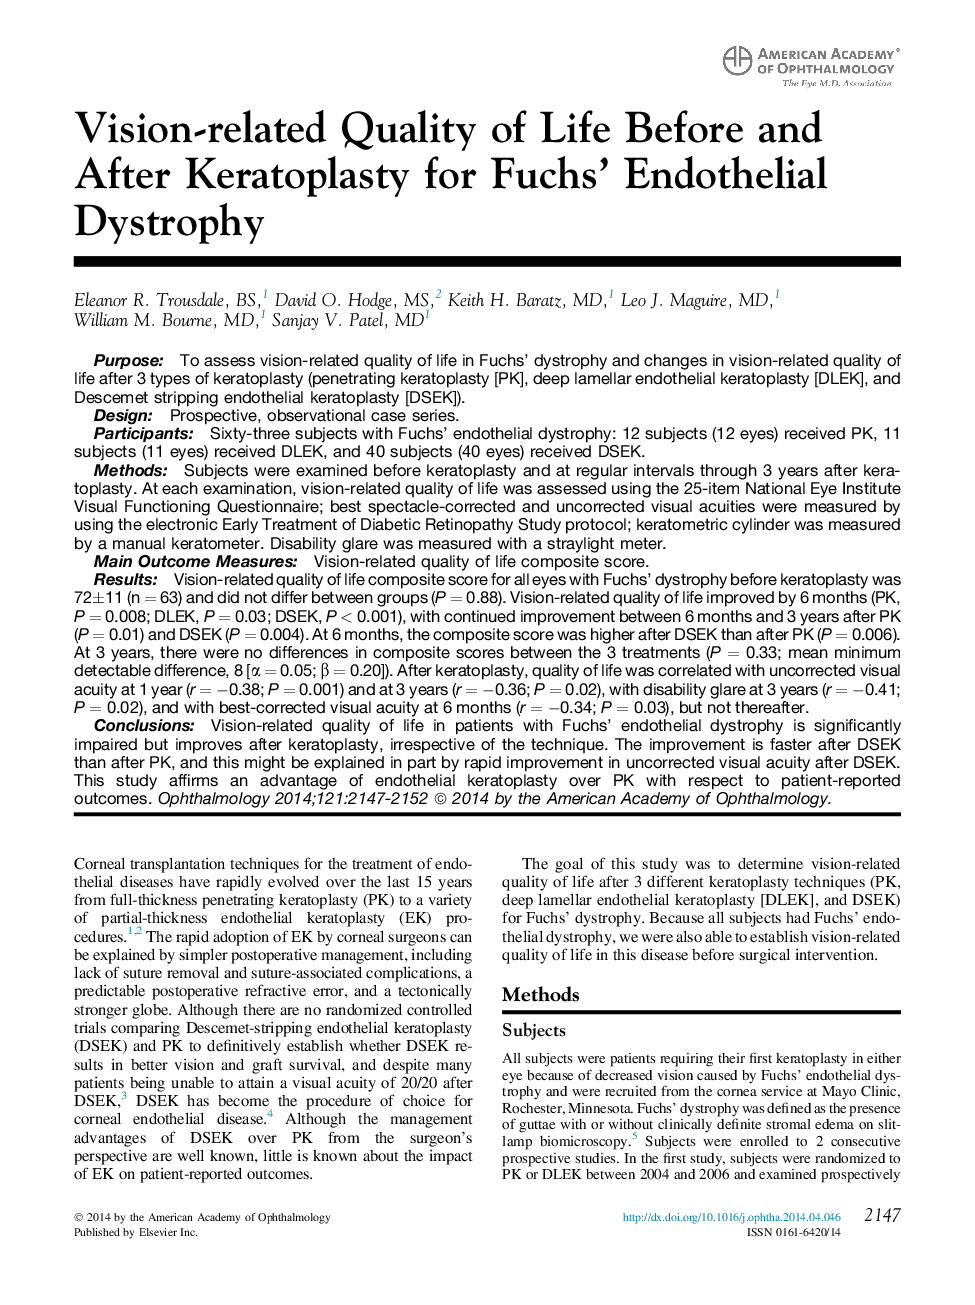 اصل مقاله کیفیت زندگی مرتبط با دیدگاه قبل و بعد از کراتوپلاستی برای دیستروفی اندوتلیال فوچ 